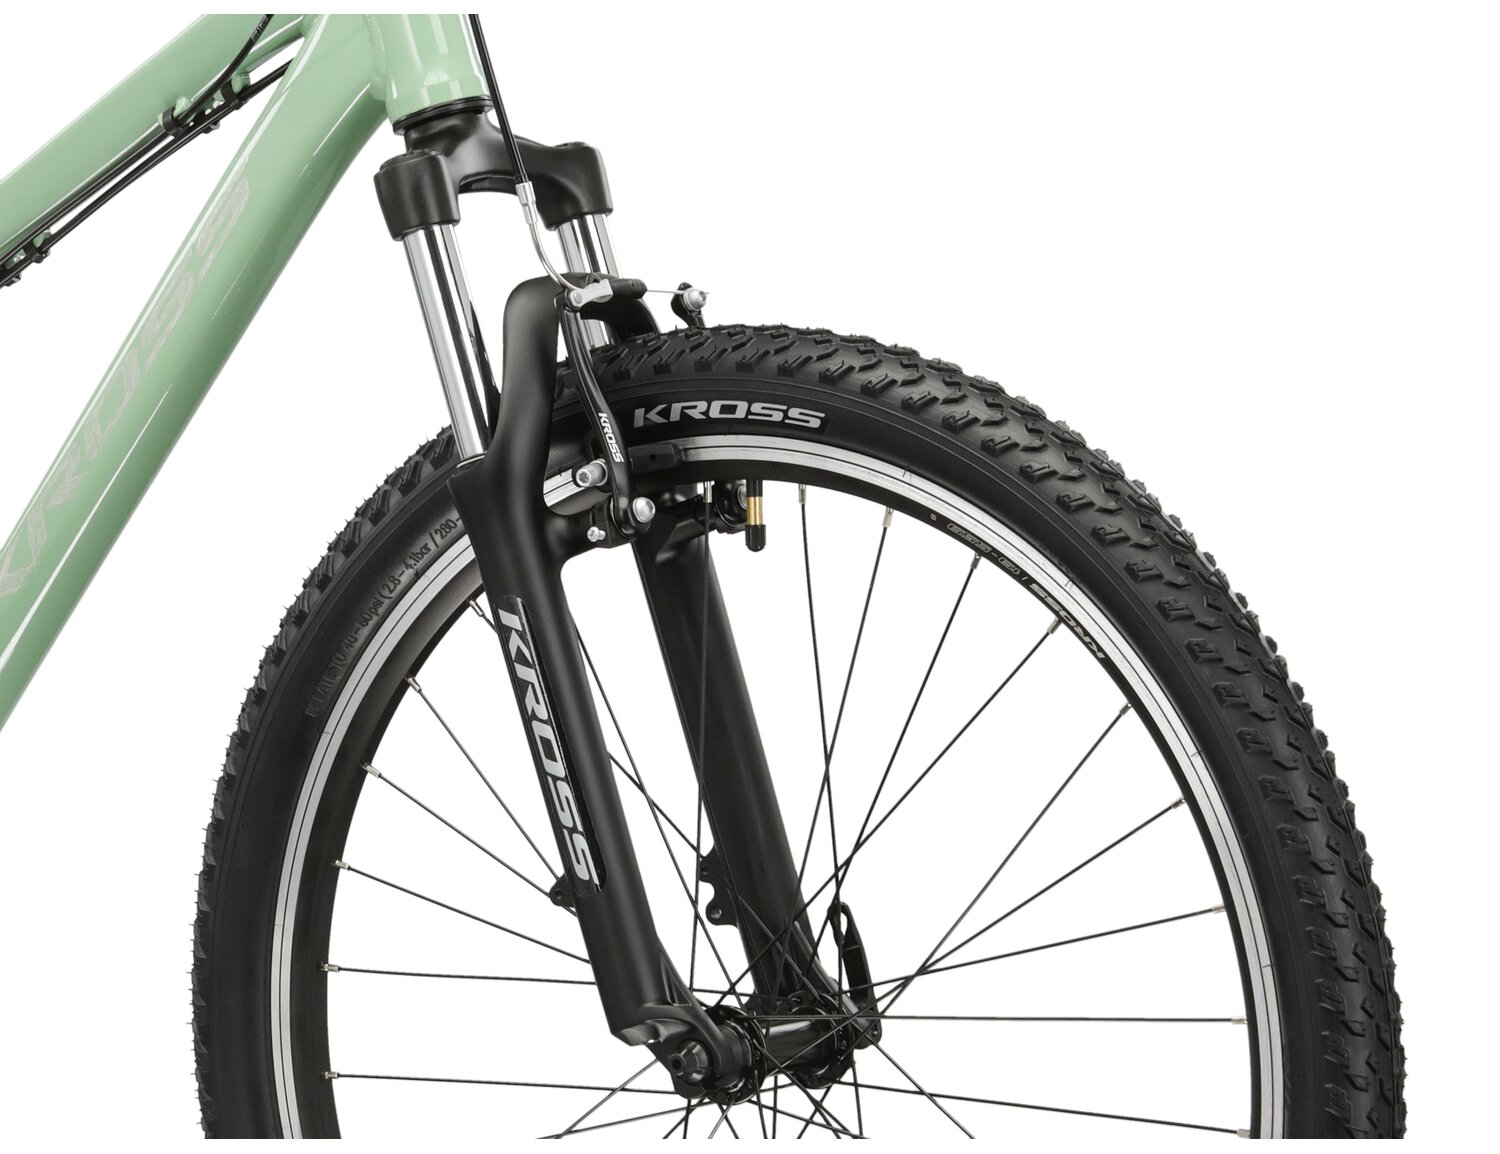  Aluminowa rama, amortyzowany widelec o skoku 80 mm oraz opony o szerokości 2,1 cala w rowerze juniorskim KROSS Berg JR 1.0 